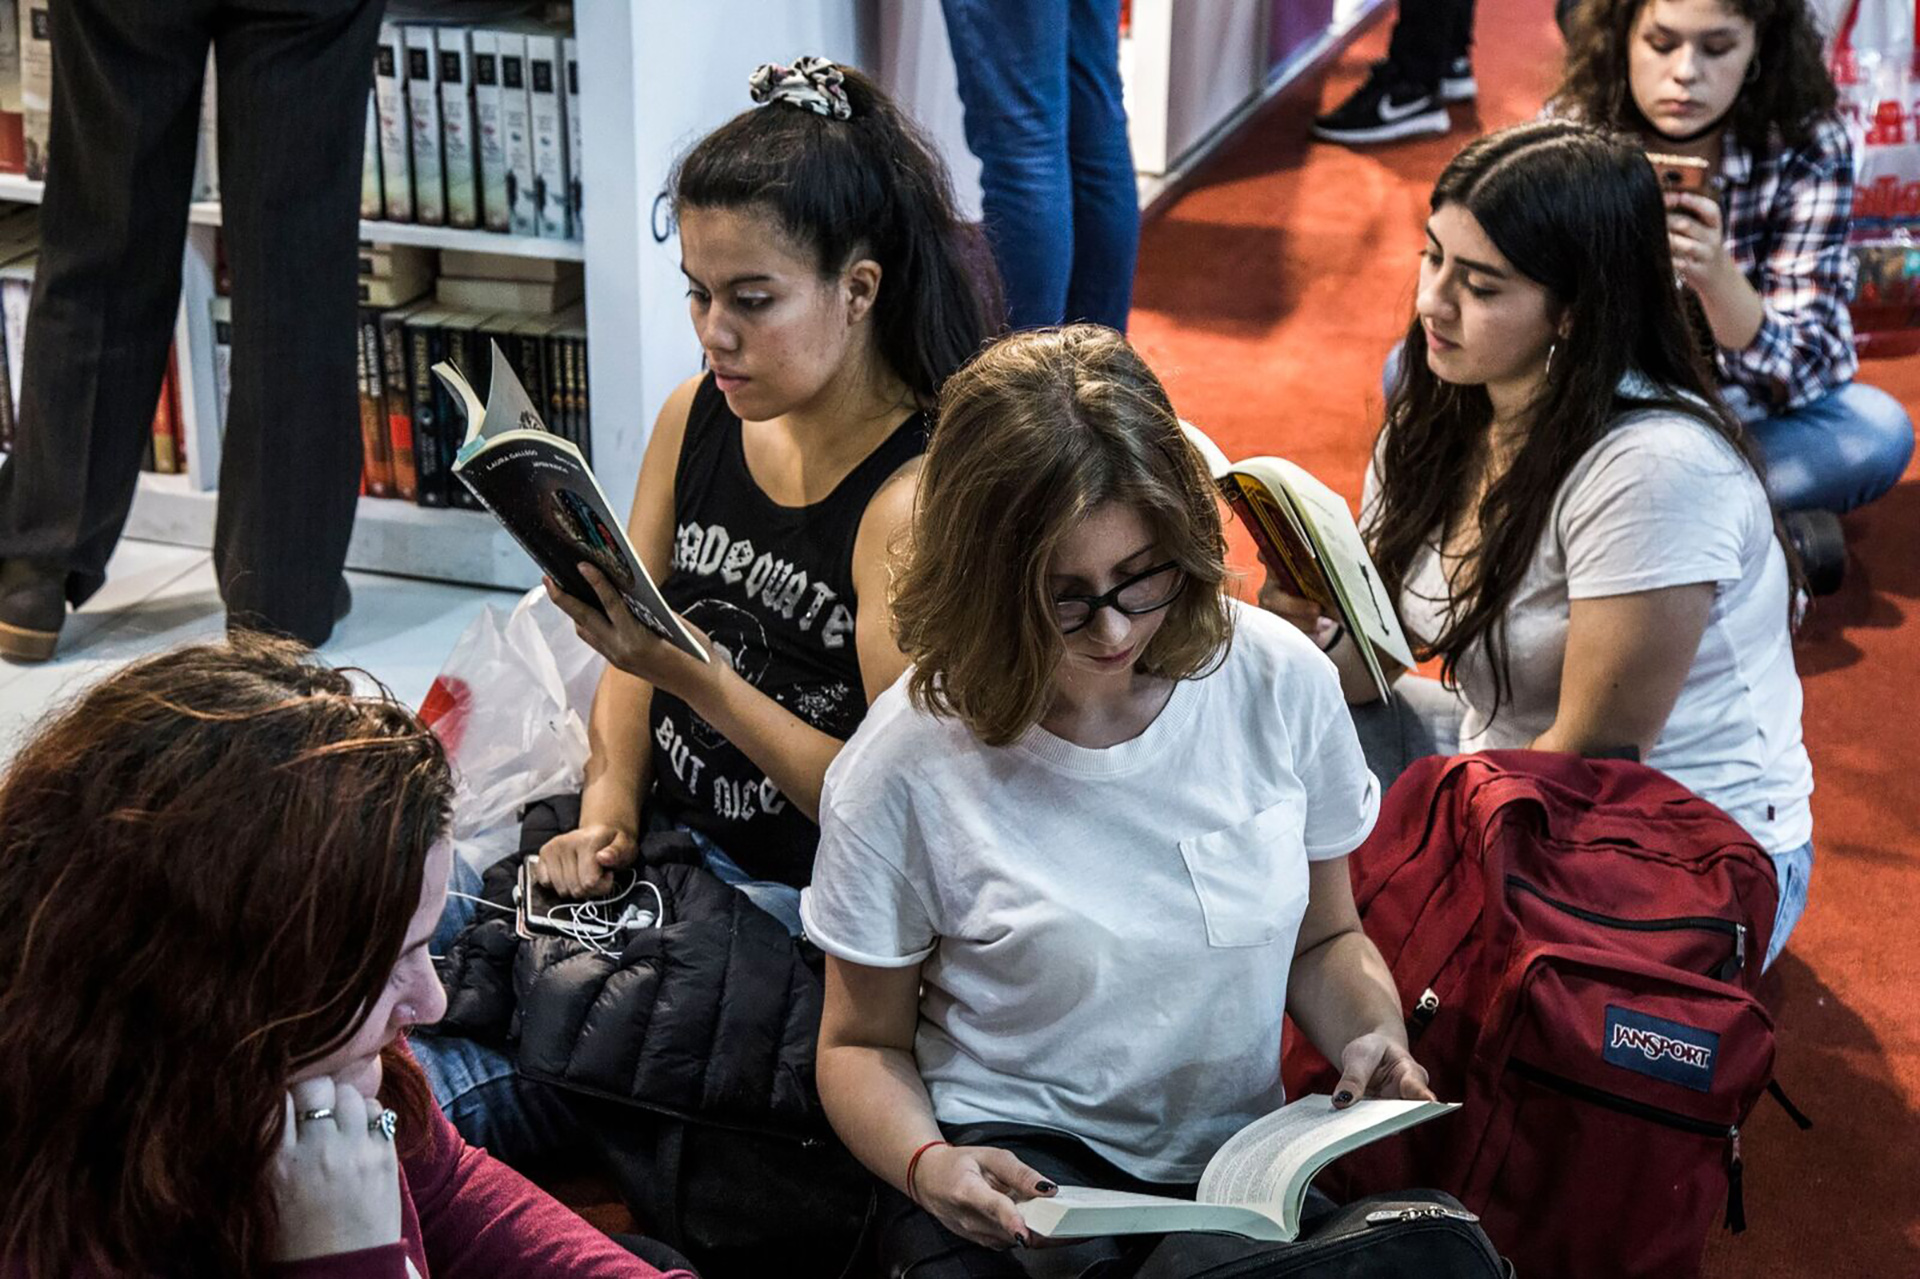 Miles de seguidores, pasión por los libros y una apuesta al futuro: los “Bookfluencers” ahora se reúnen en Mar del Plata